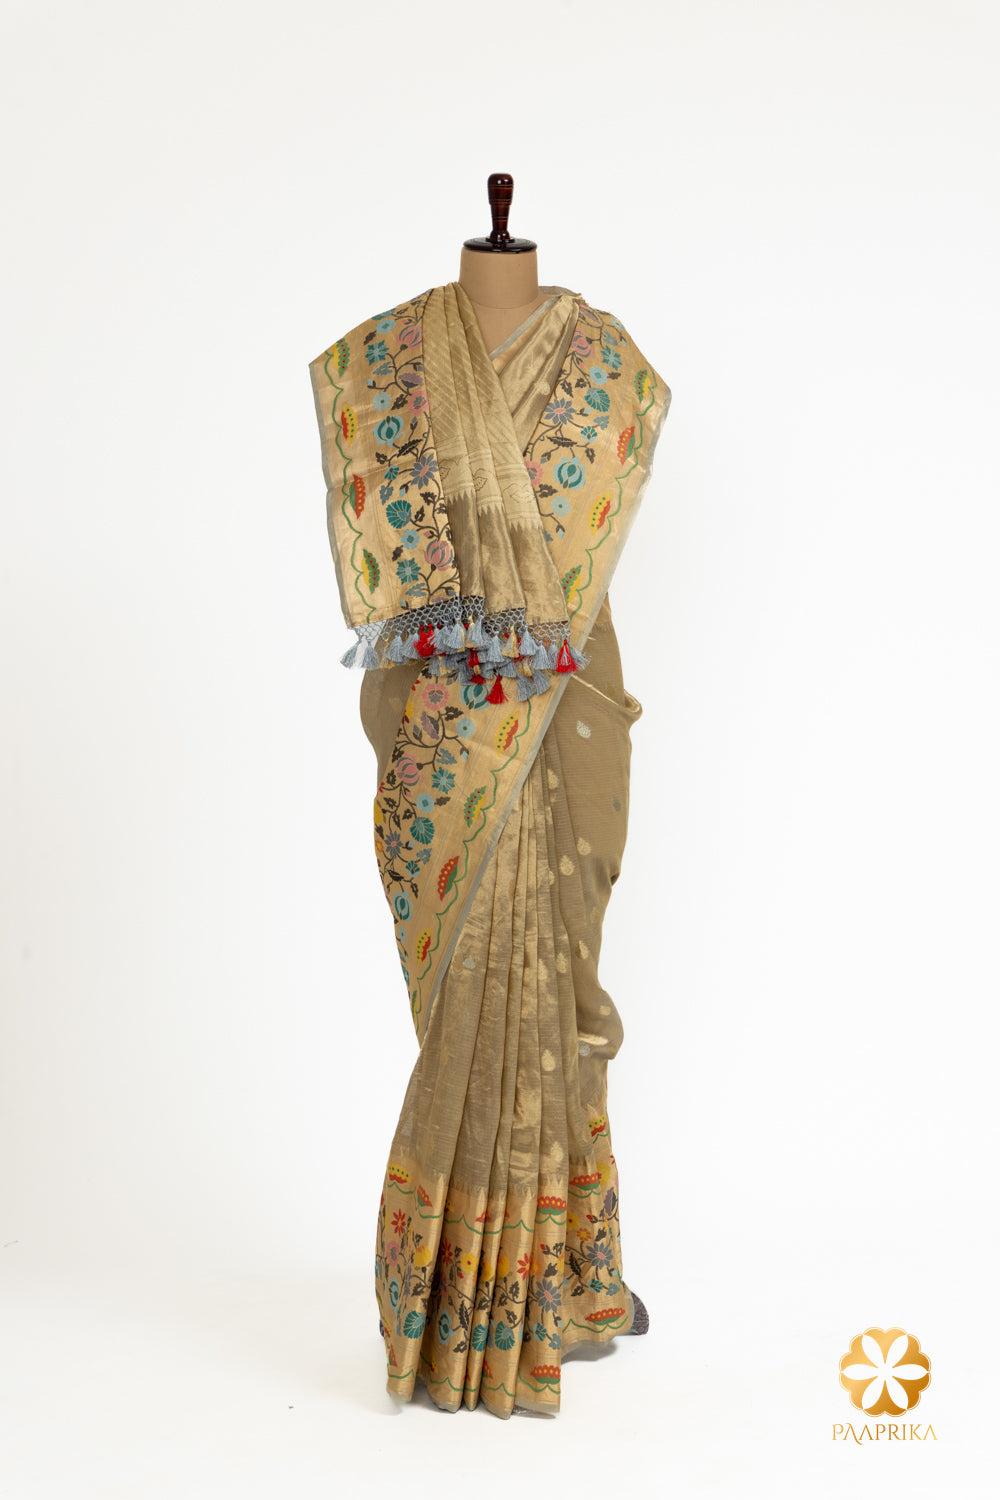 Intricate Minakari motifs showcase Indian artisan craftsmanship.